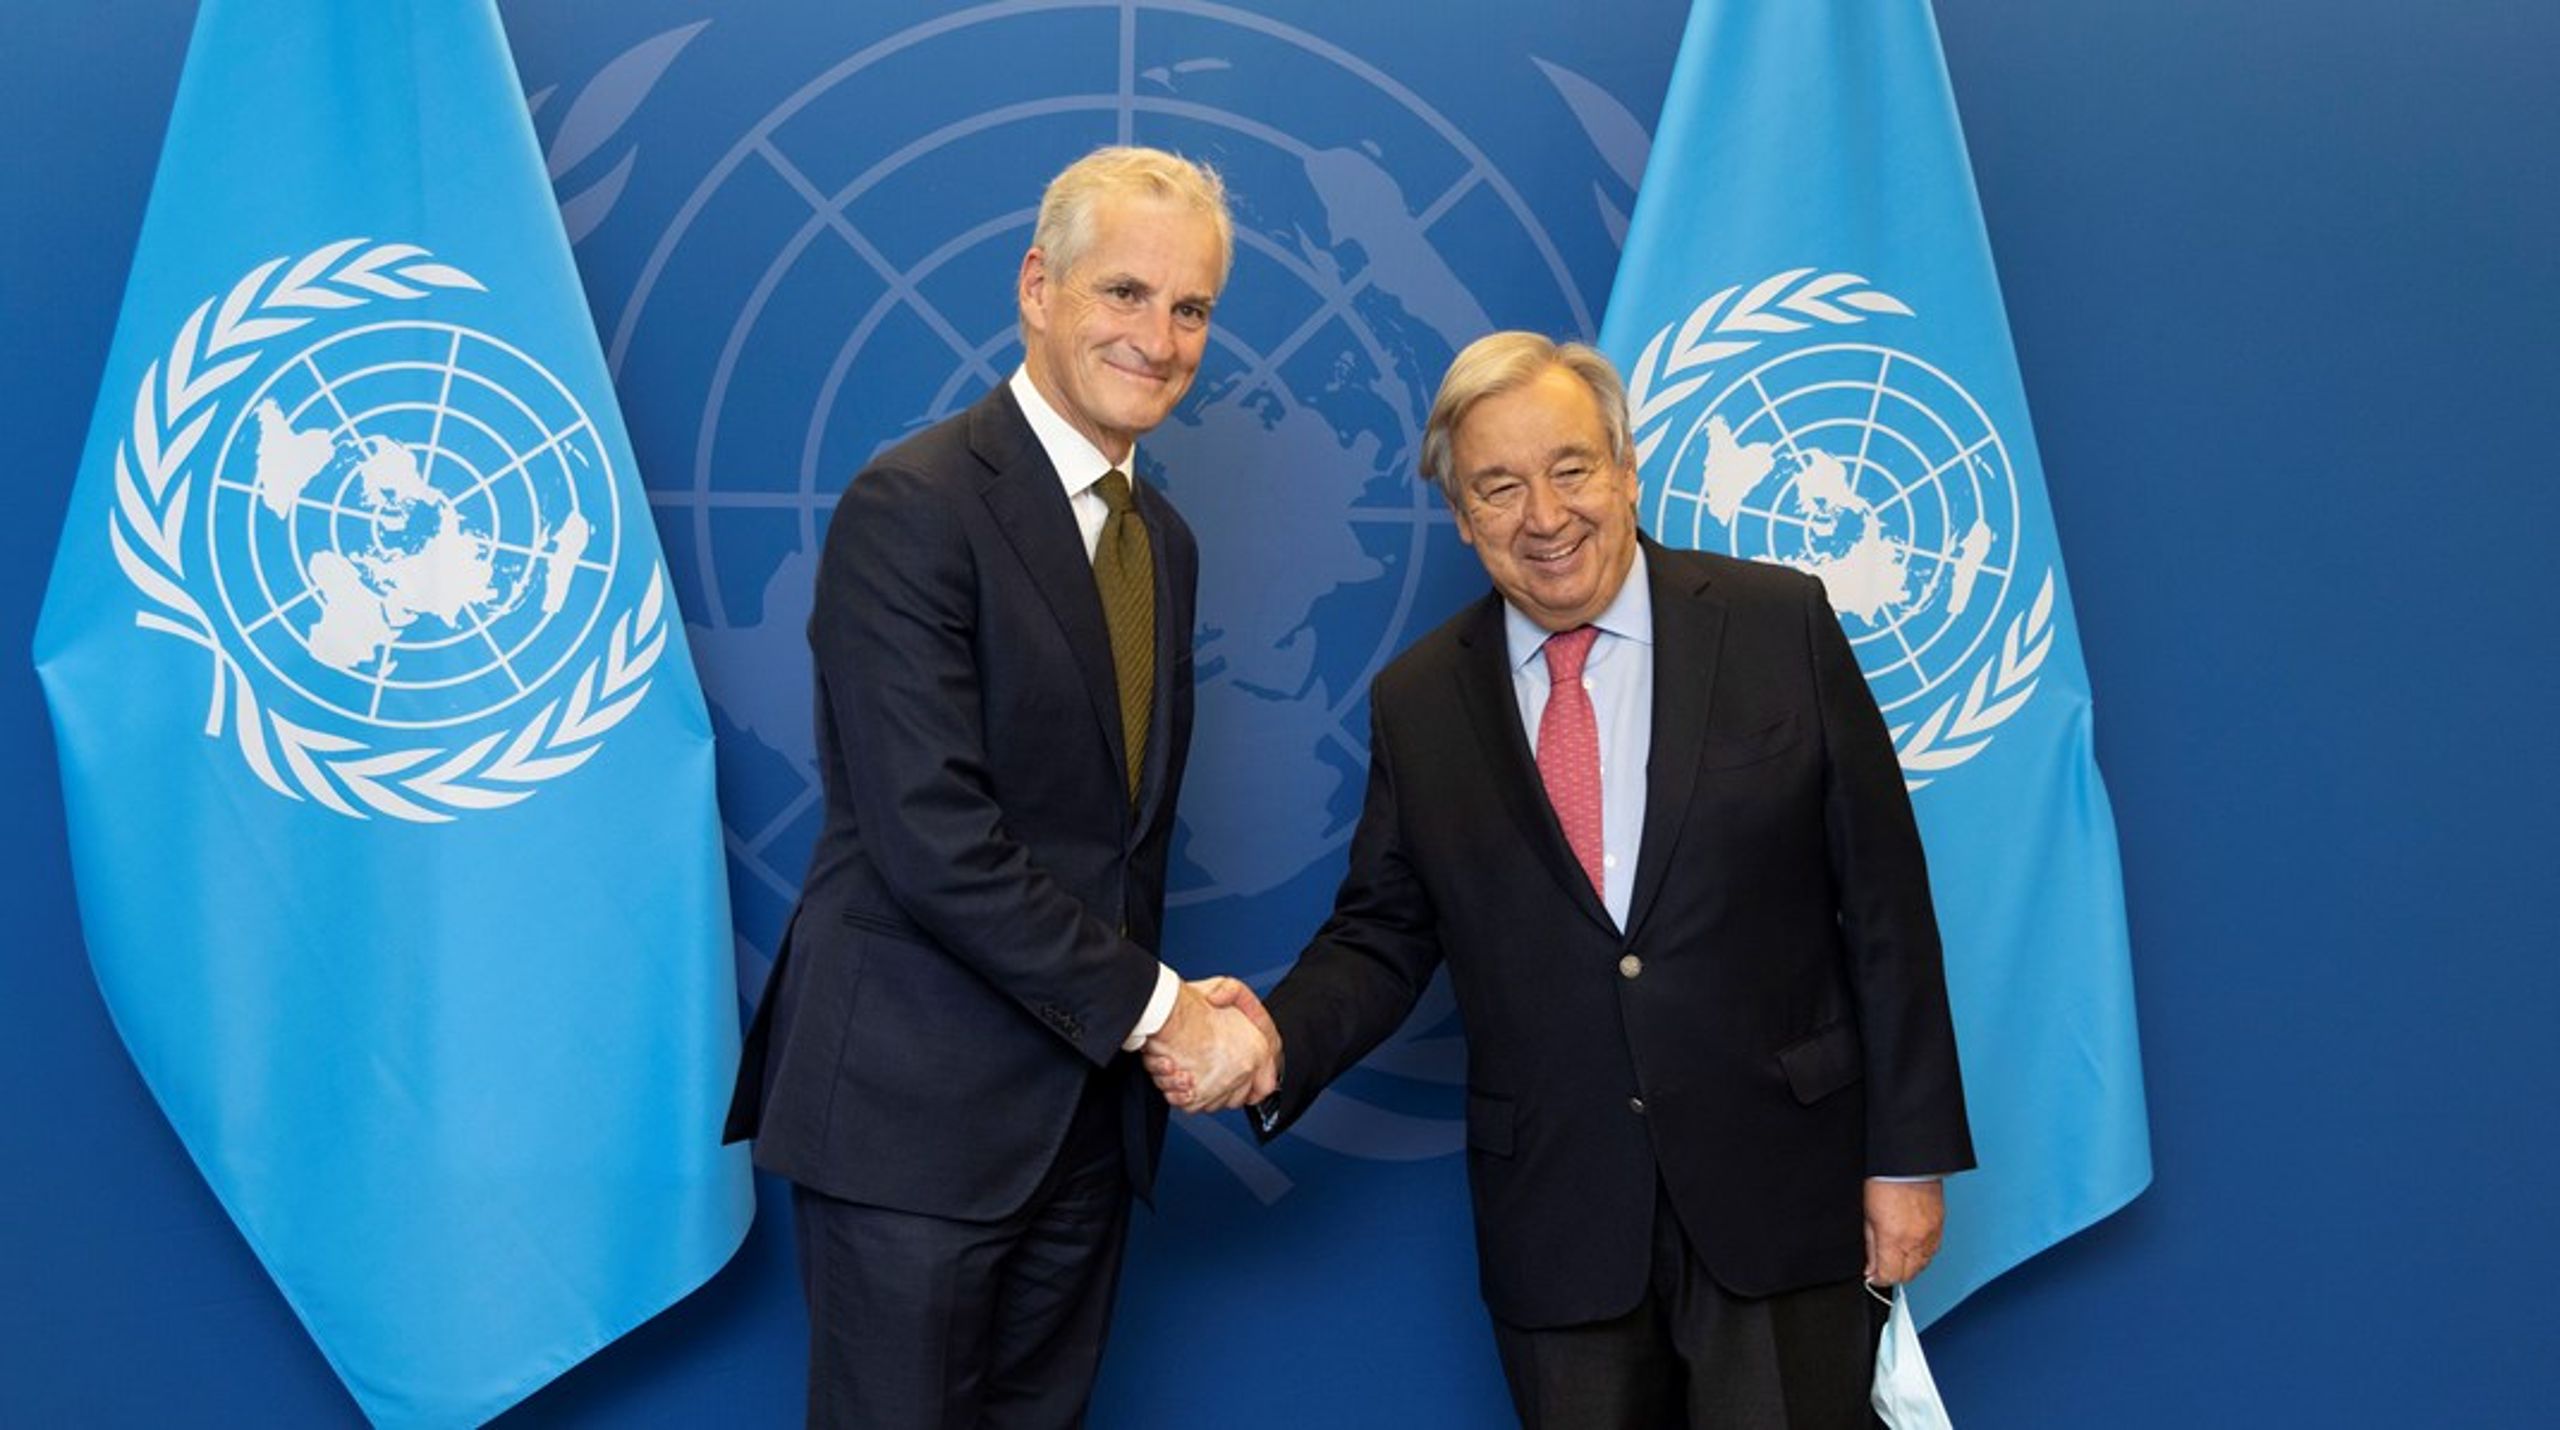 Statsminister Jonas Gahr Støre (t.v.) sammen med FNs generalsekretær&nbsp;Antonio Guterres under fjorårets høynivåuke i FN.